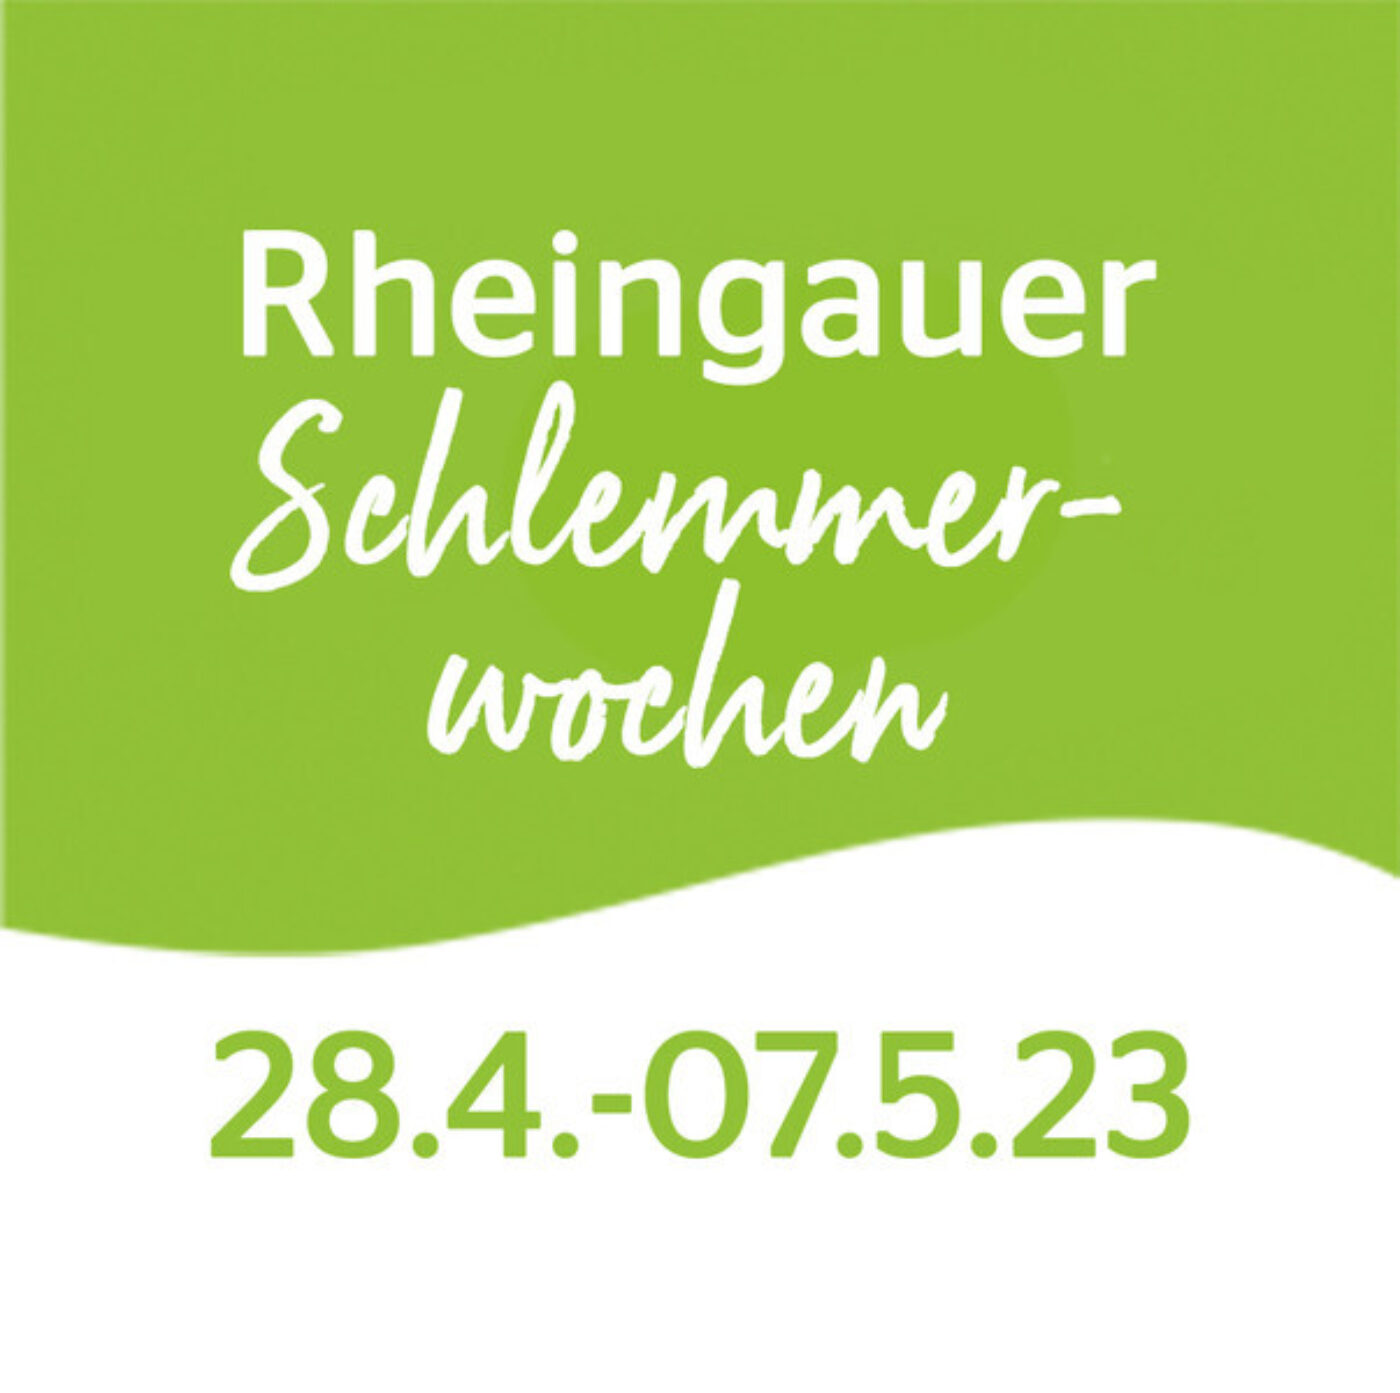 Rheingauer Schlemmerwochen"